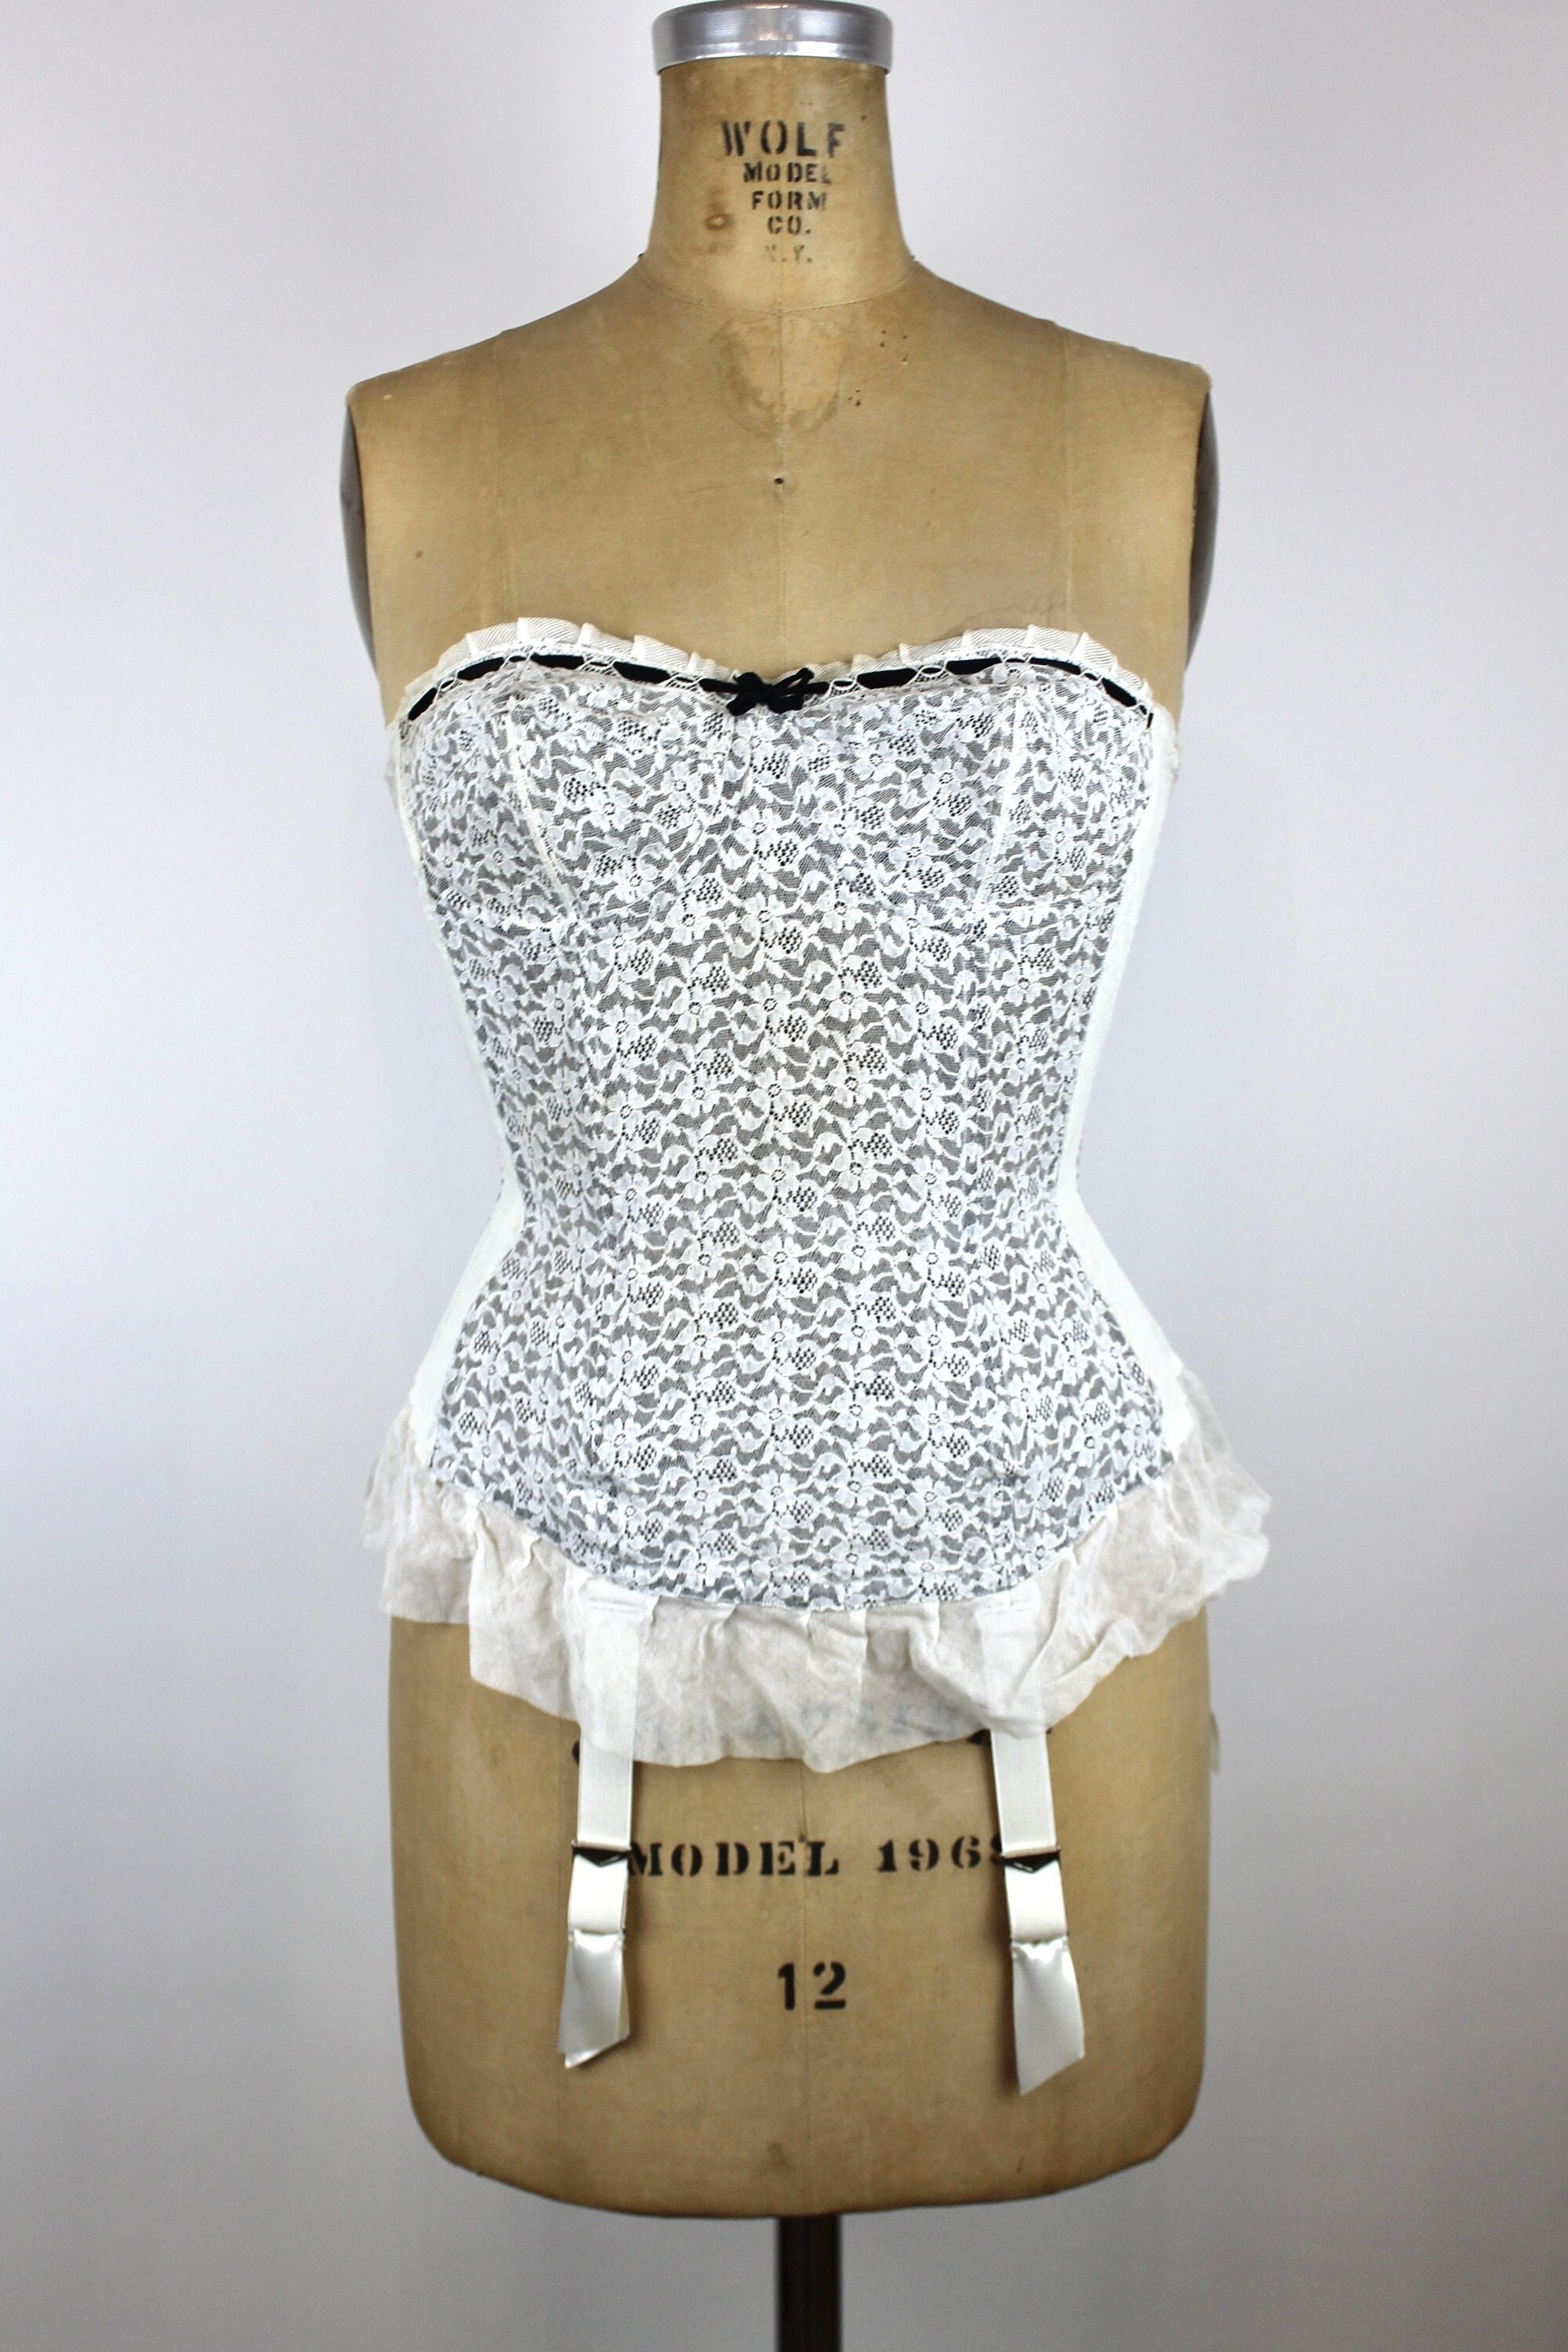 1950's Style High Waist Brief Girdle #1950s #lingerie